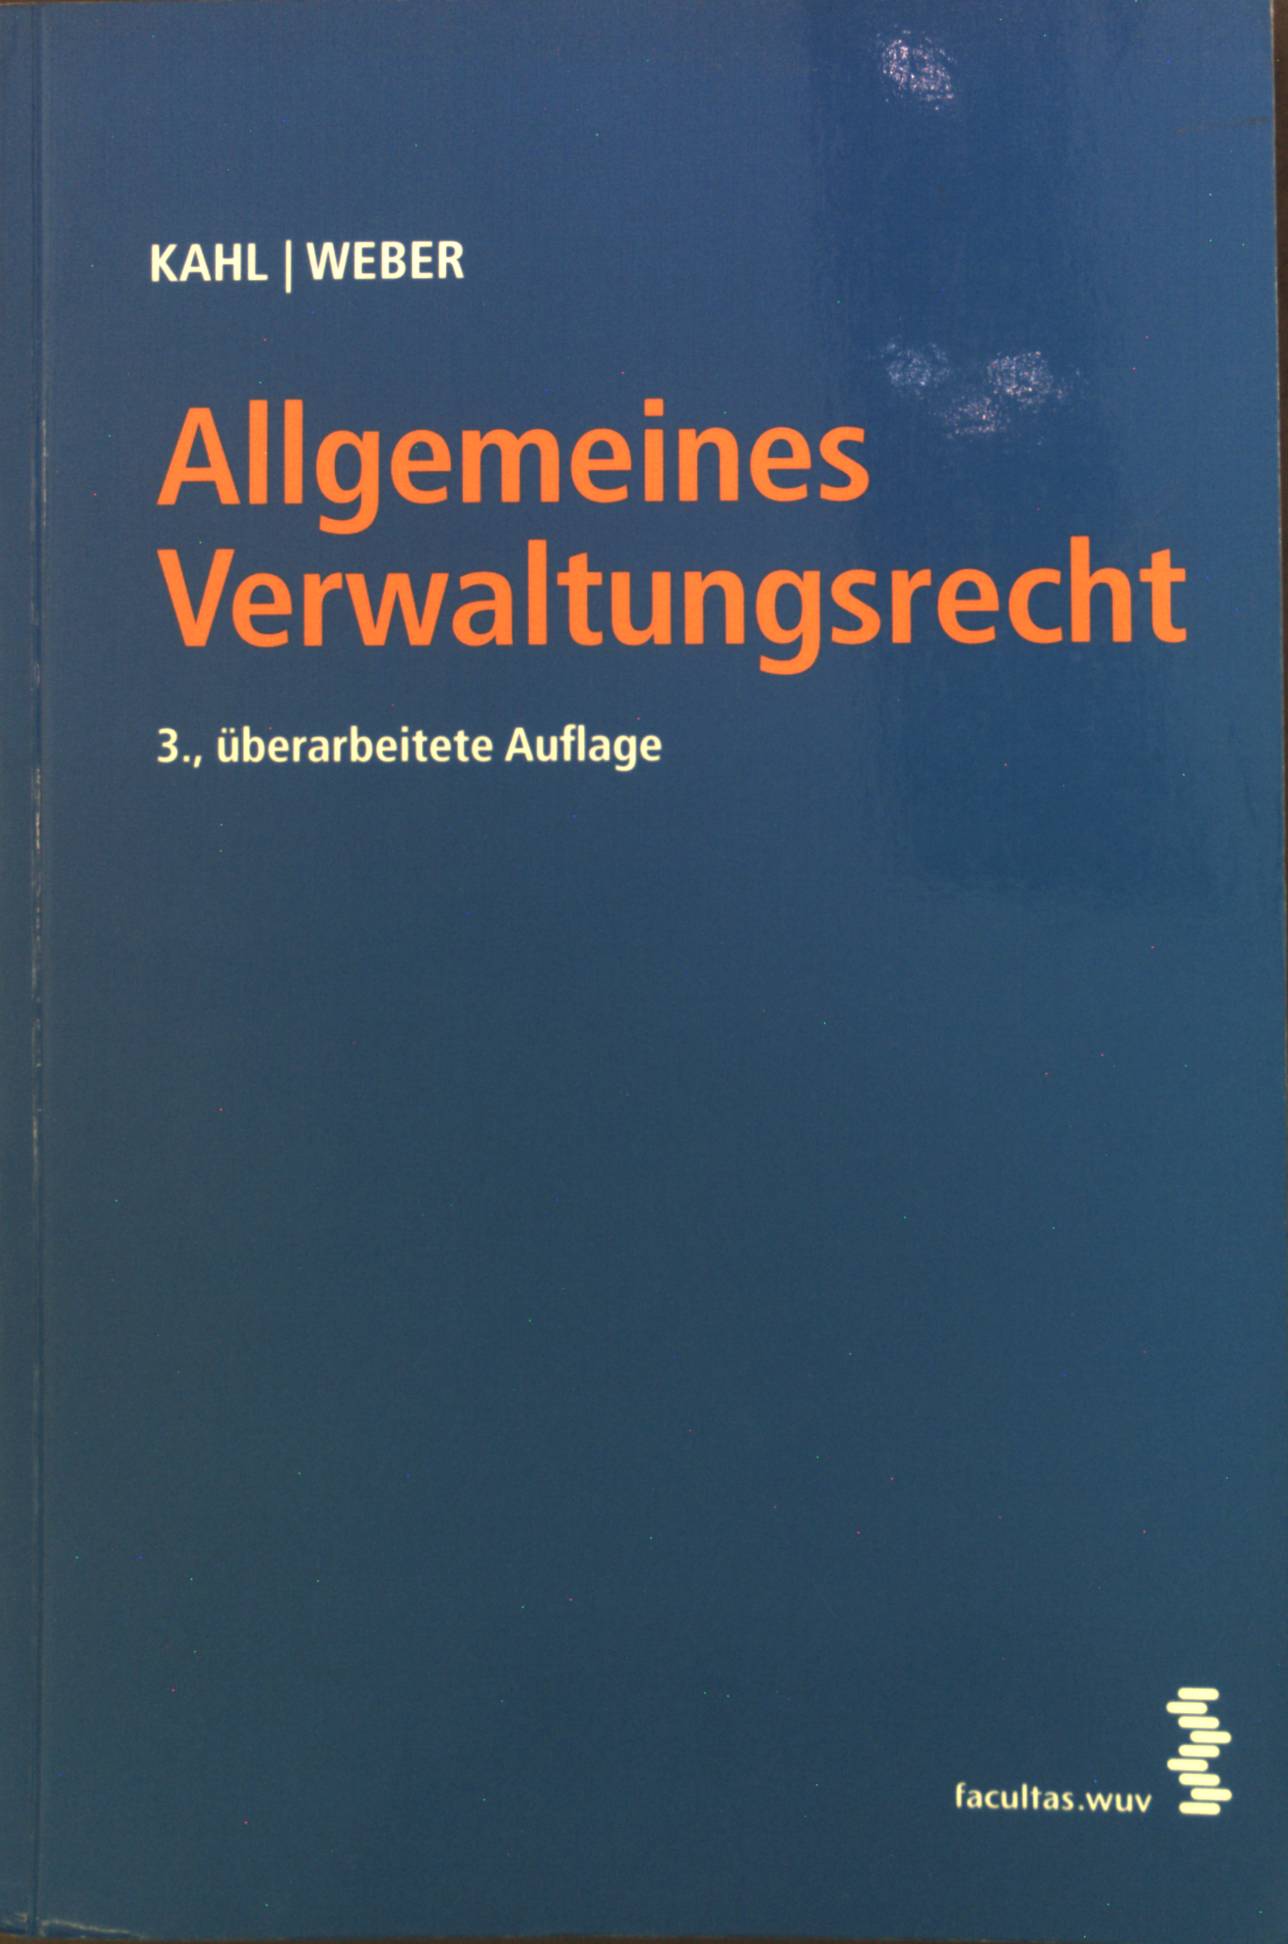 Allgemeines Verwaltungsrecht.  3., überarb. Aufl. - Kahl, Arno und Karl Weber